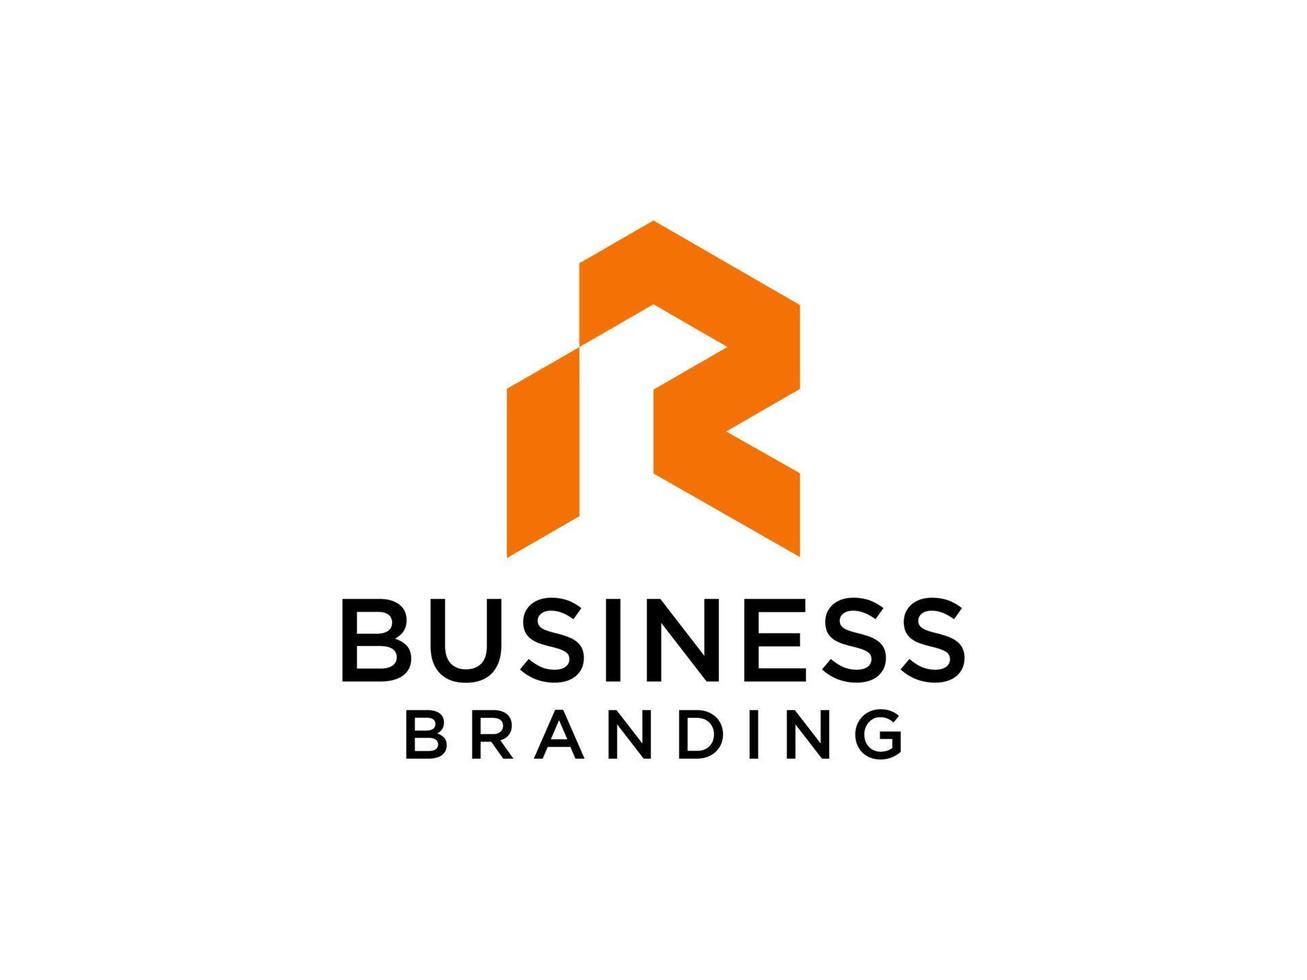 moderne eerste letter r-logo. oranje geometrische vorm geïsoleerd op een witte achtergrond. bruikbaar voor bedrijfs- en merklogo's. platte vector logo-ontwerpelementen sjabloon.